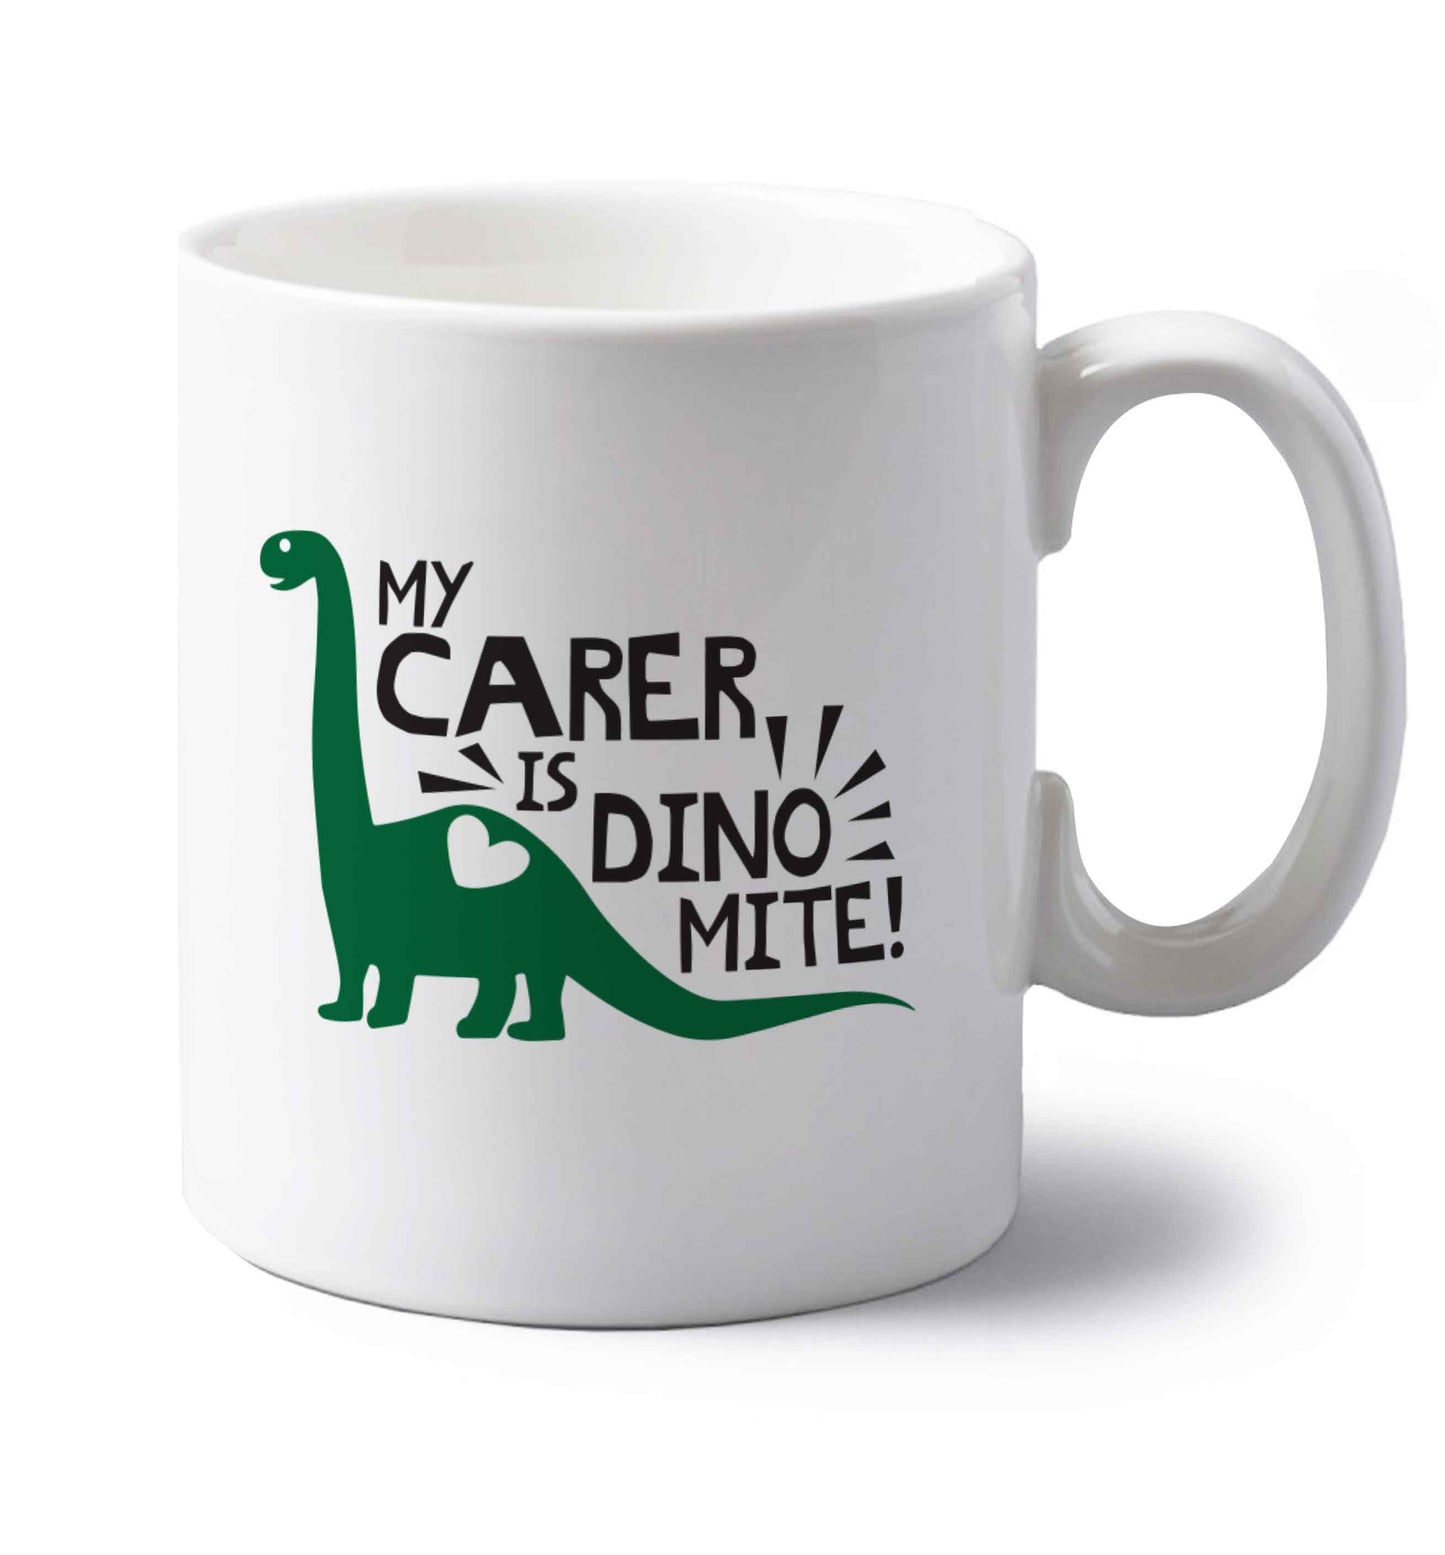 My carer is dinomite! left handed white ceramic mug 